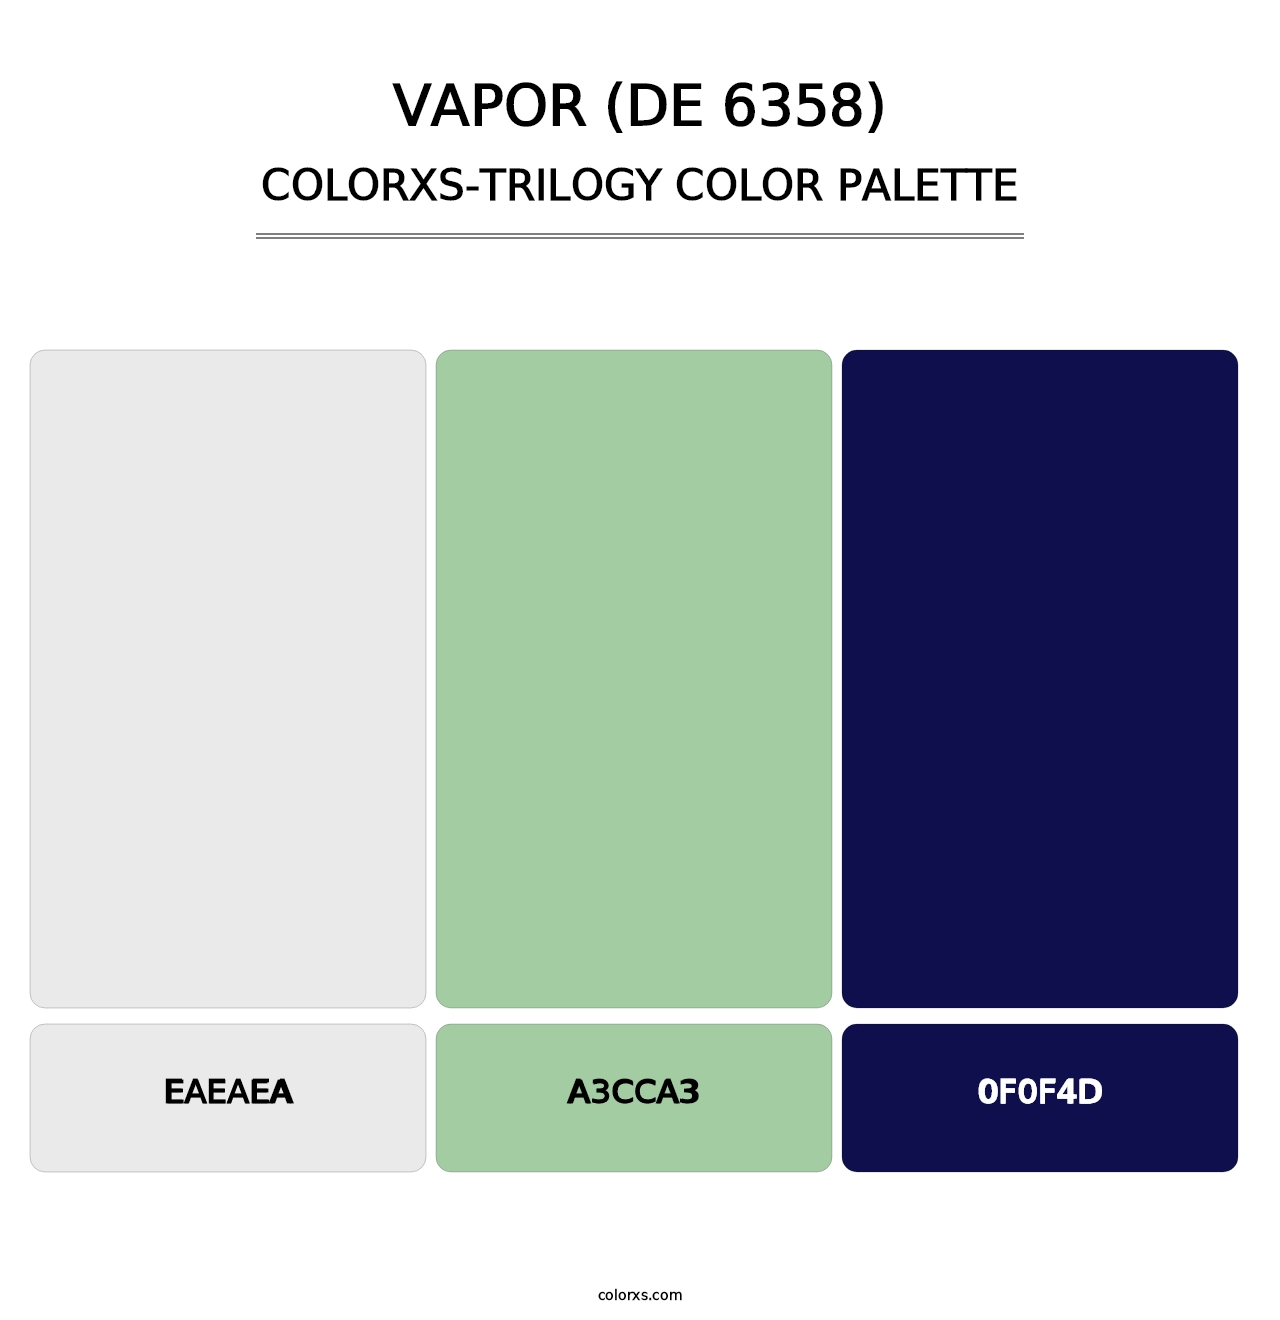 Vapor (DE 6358) - Colorxs Trilogy Palette